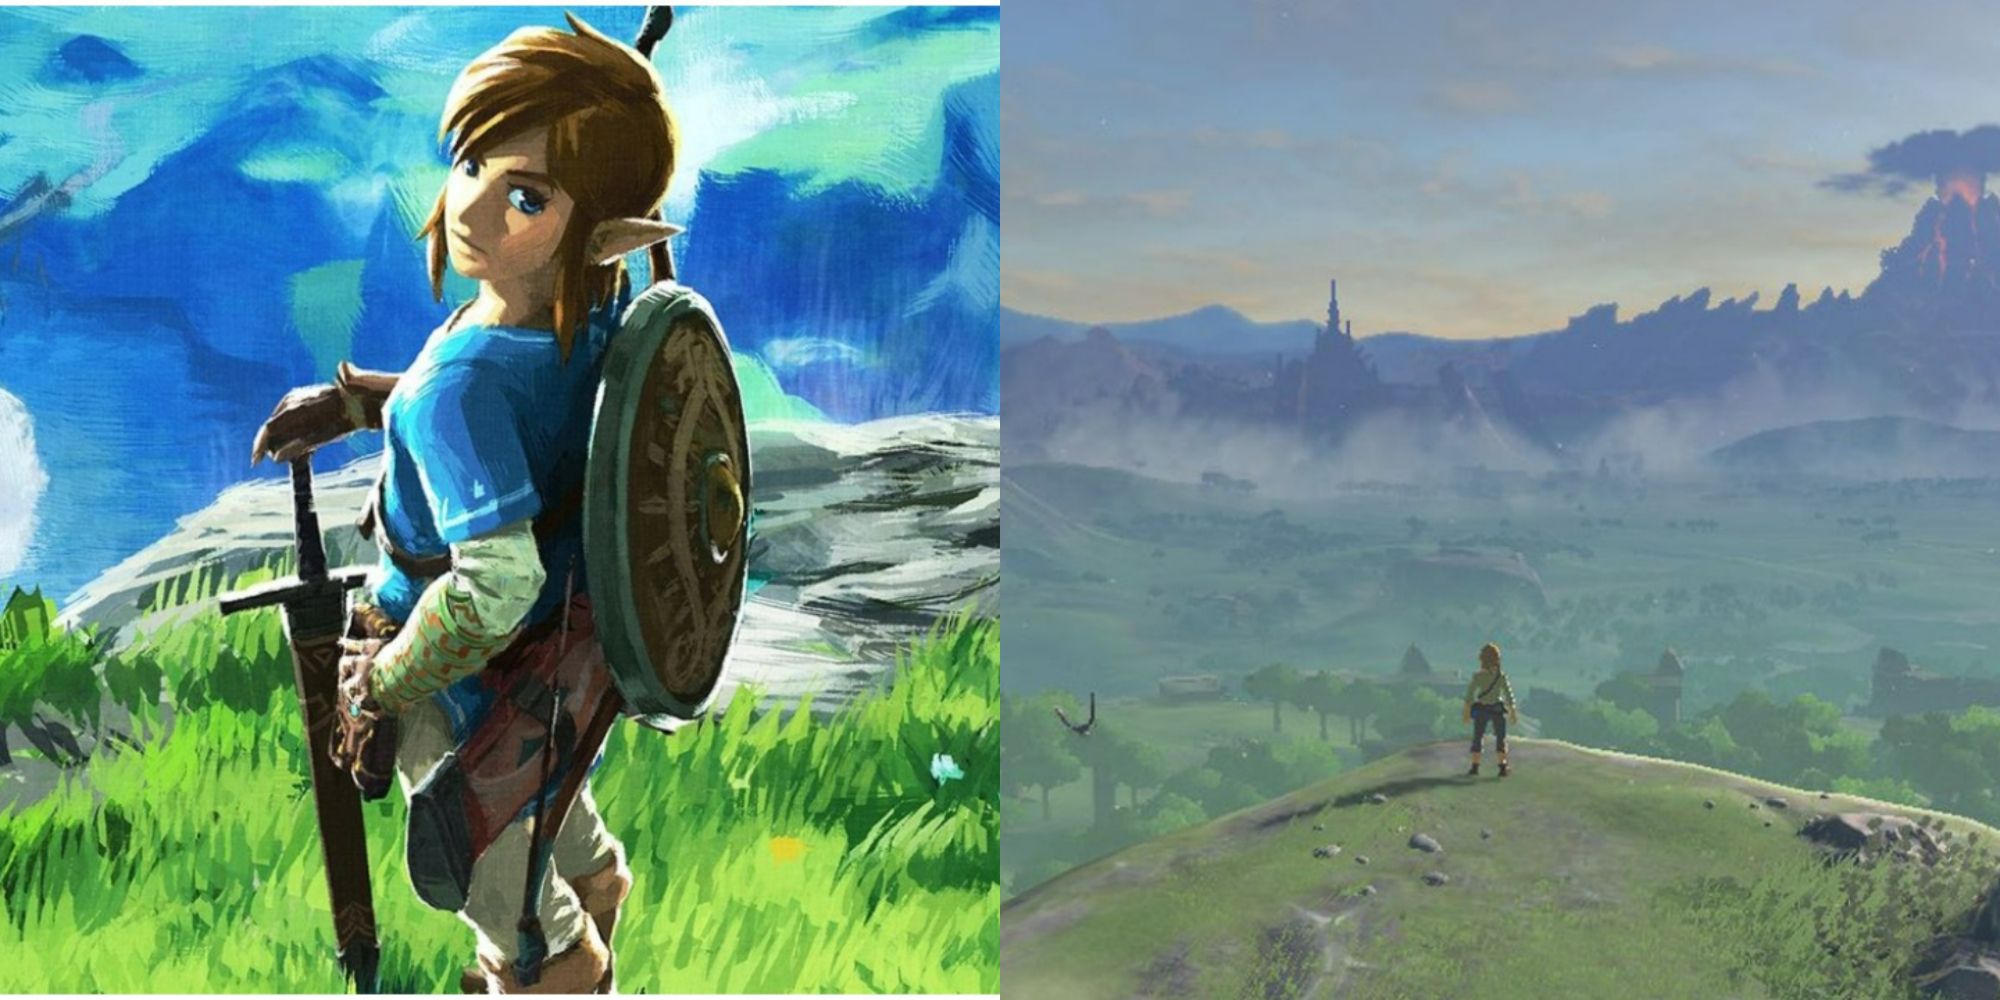 Como Zelda Breath of the Wild influenciou o futuro dos games e se